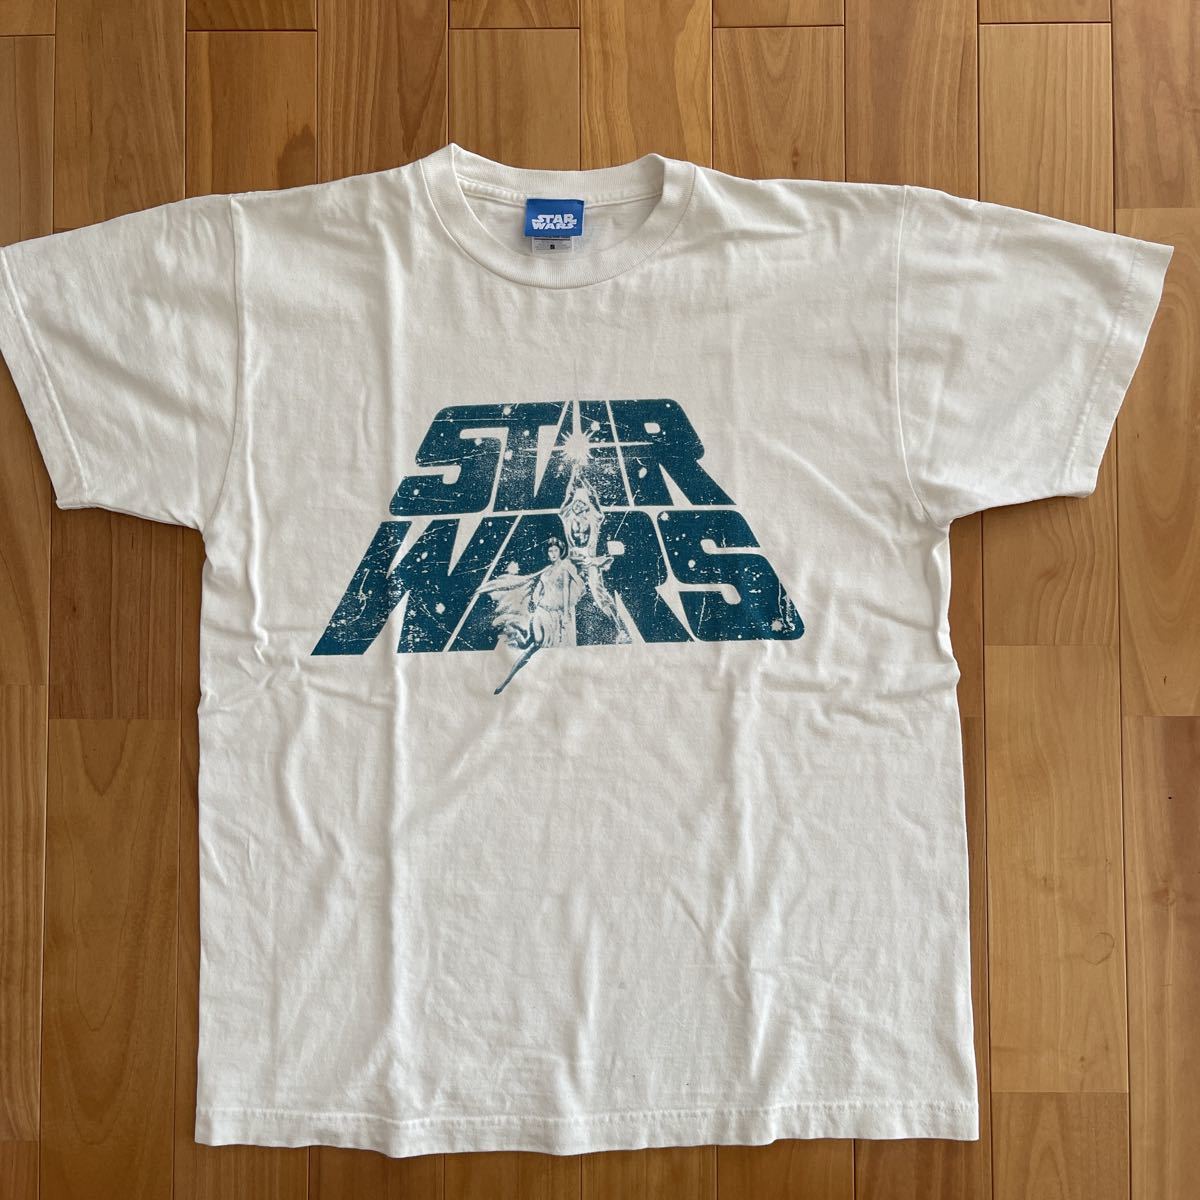 star wars スターウォーズ エピソード4のデザインのTシャツ 大き目なSサイズ 白_画像1